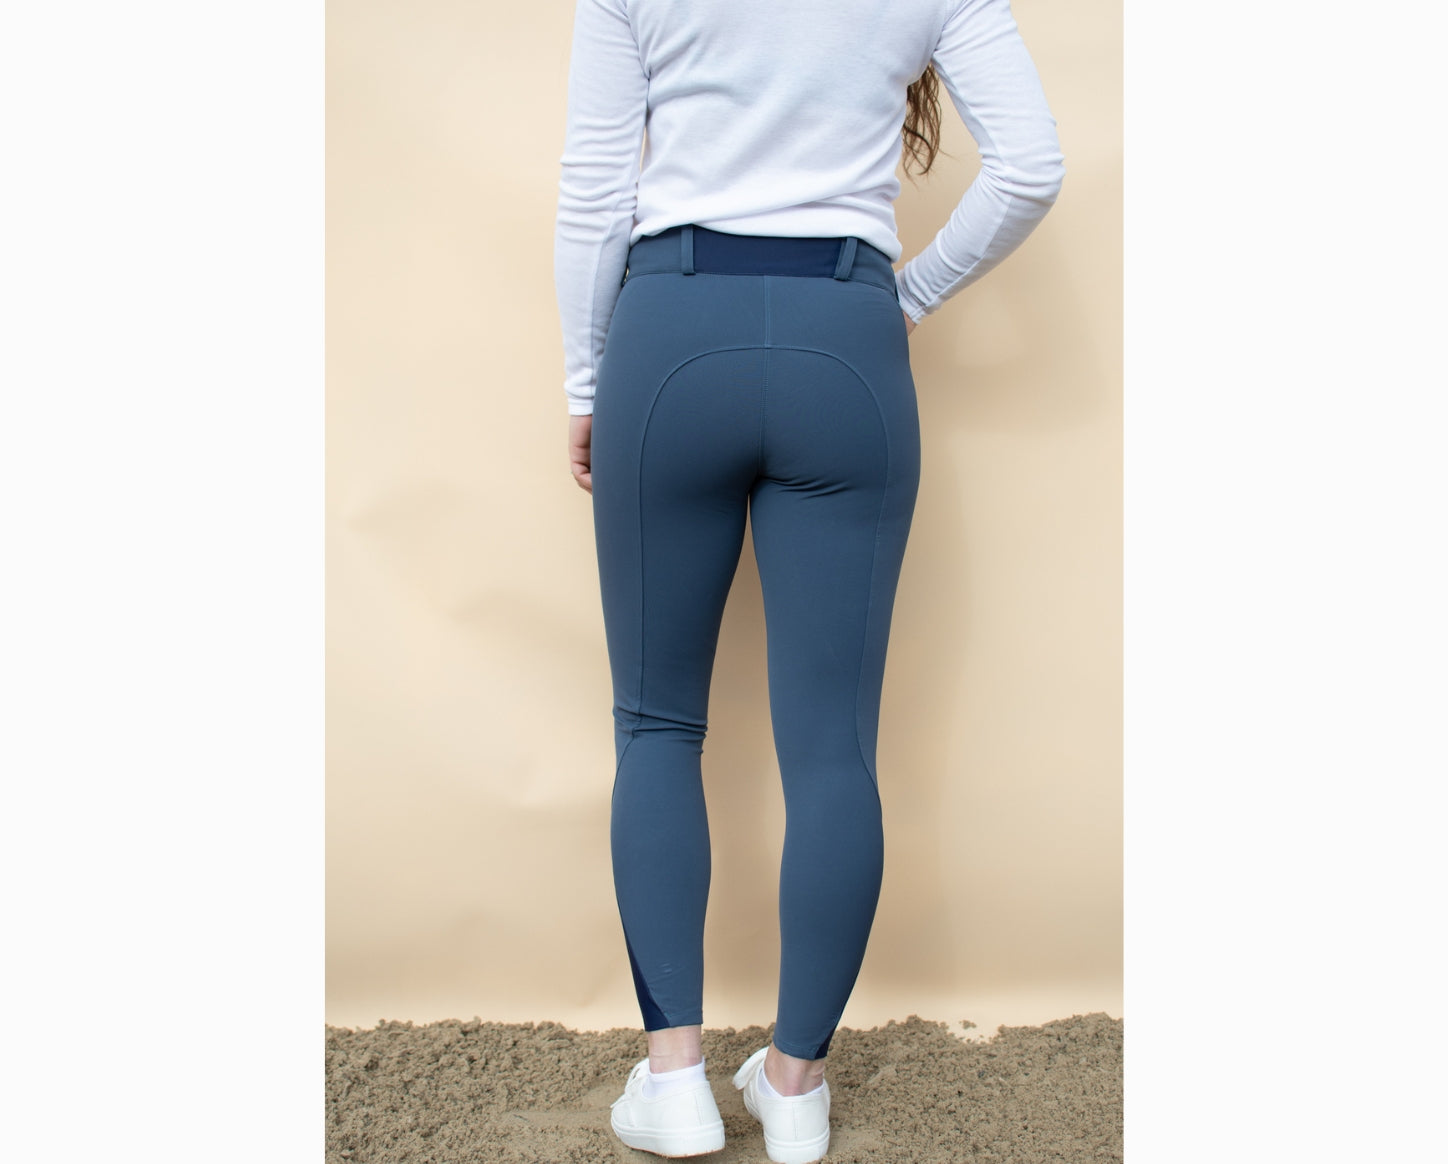 Pantalon d'équitation femme grande taille – BASANNE